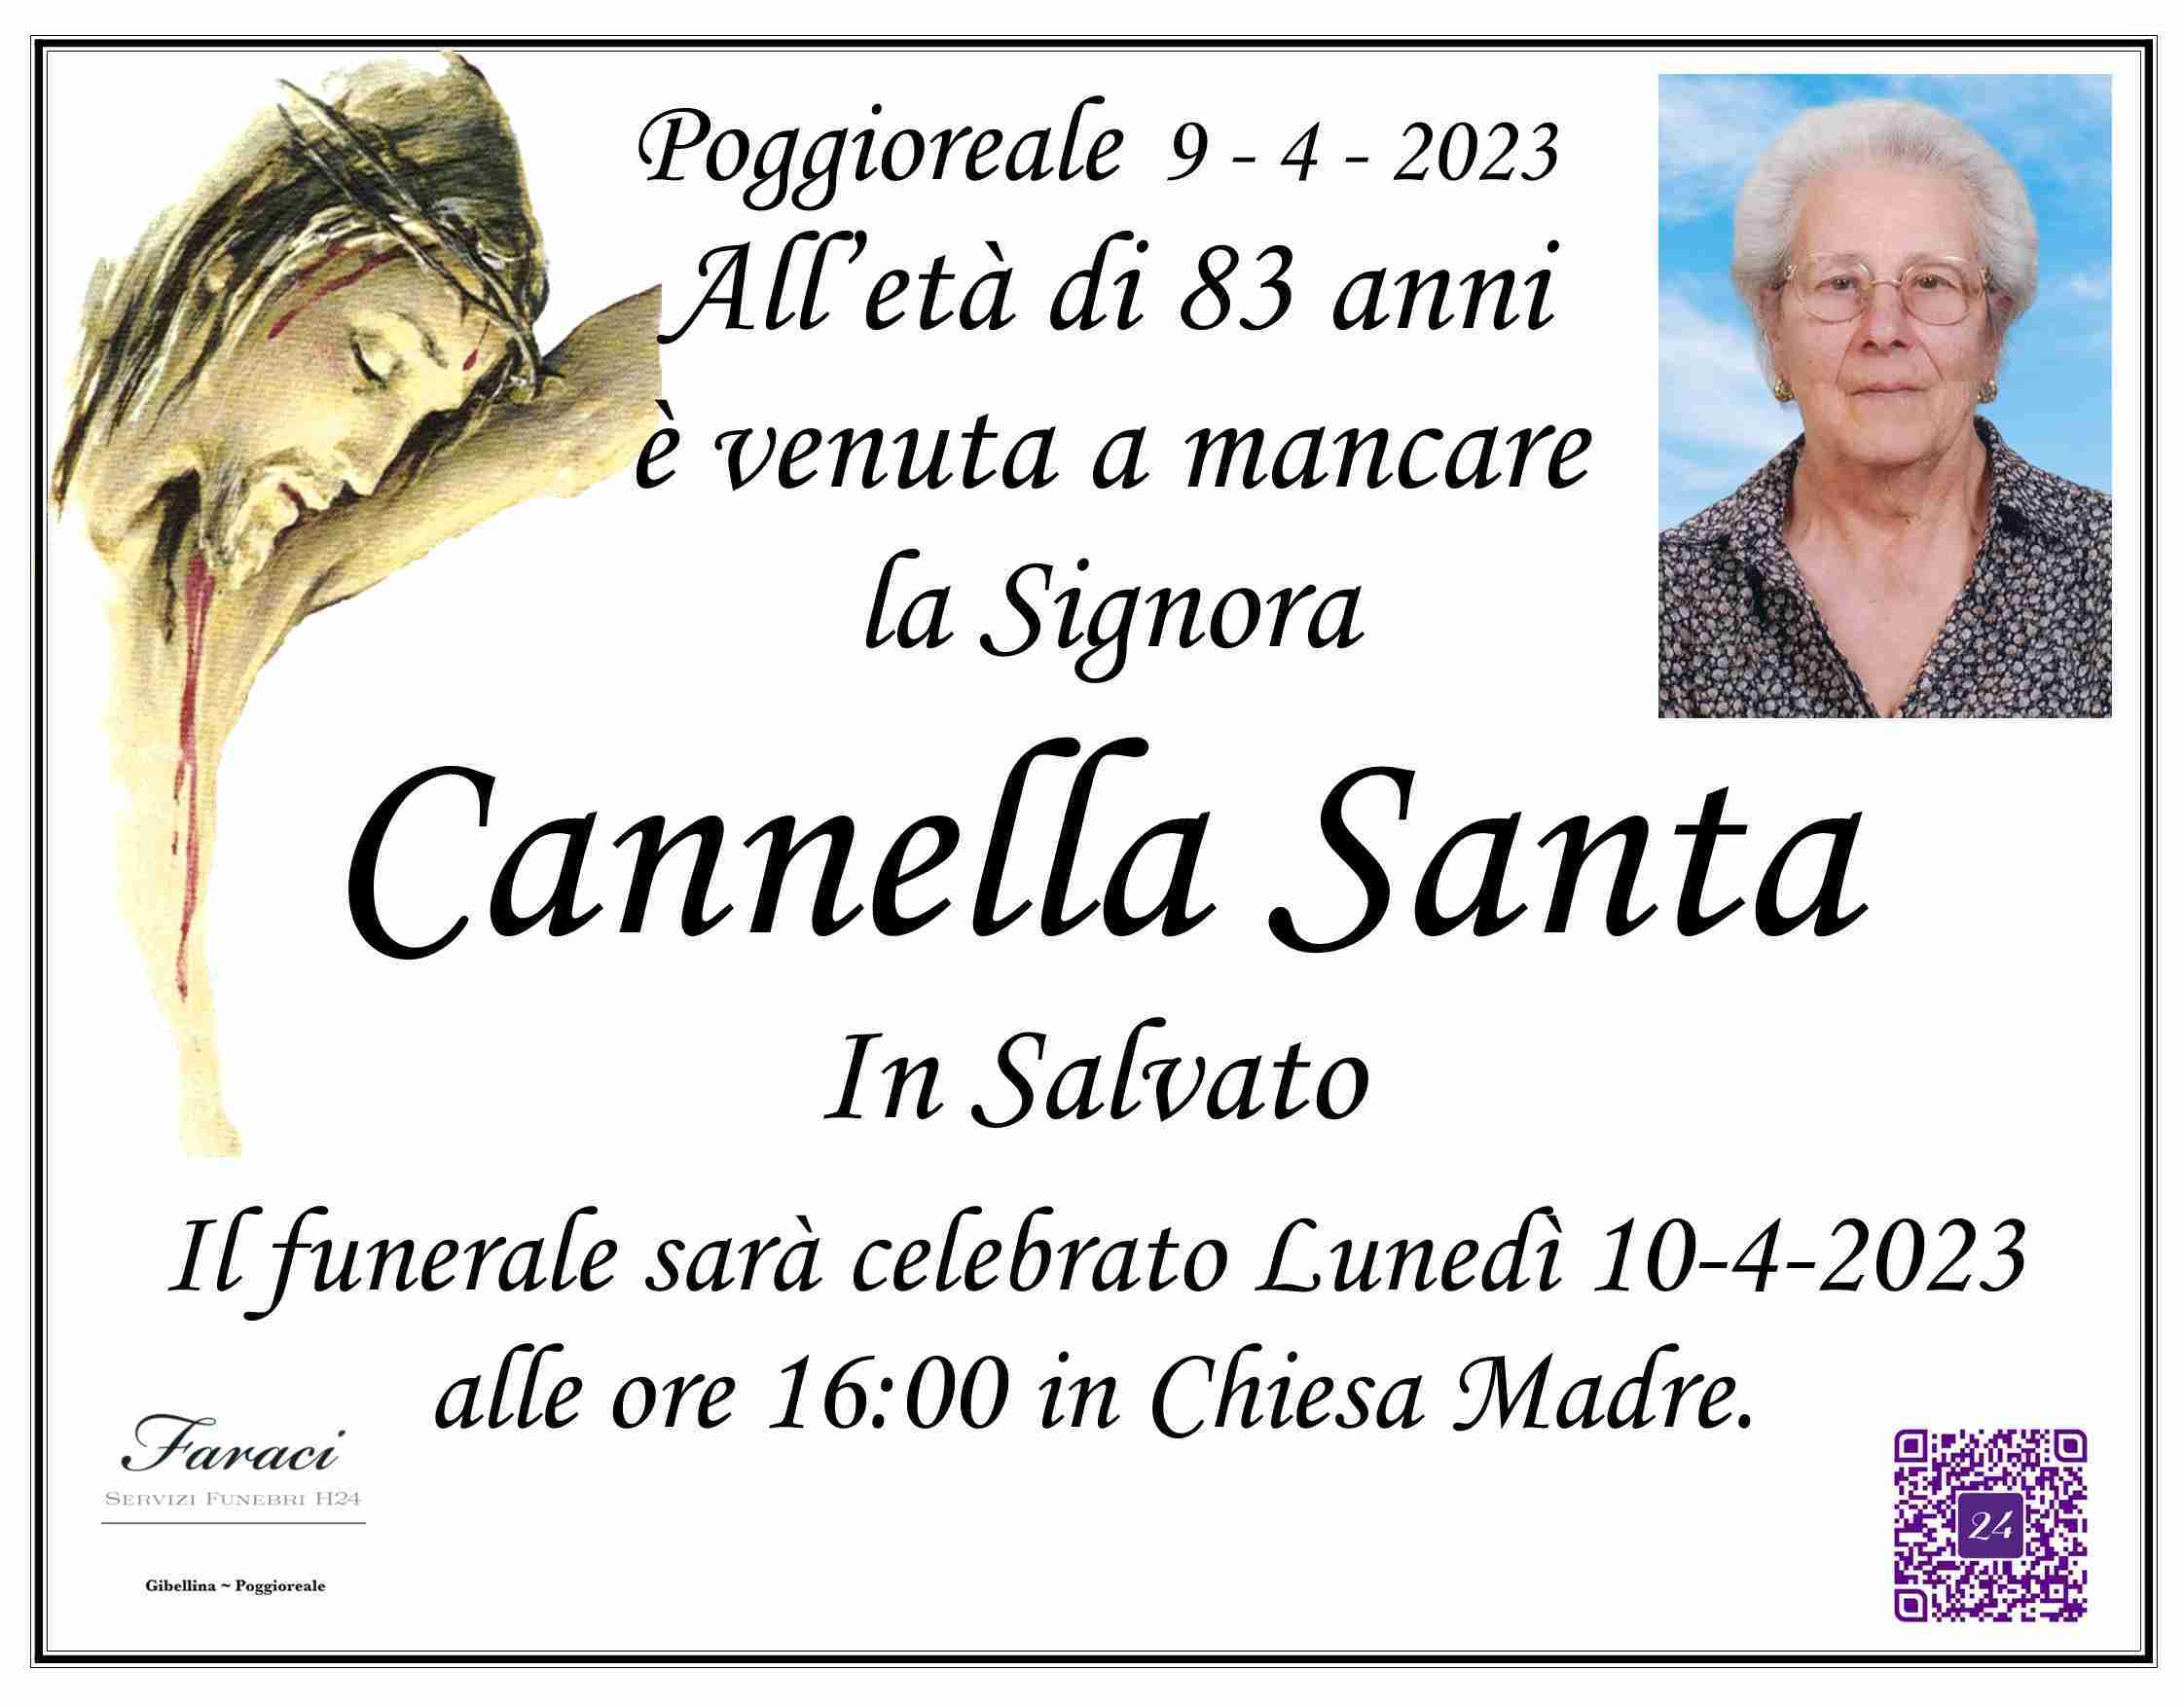 Santa Cannella